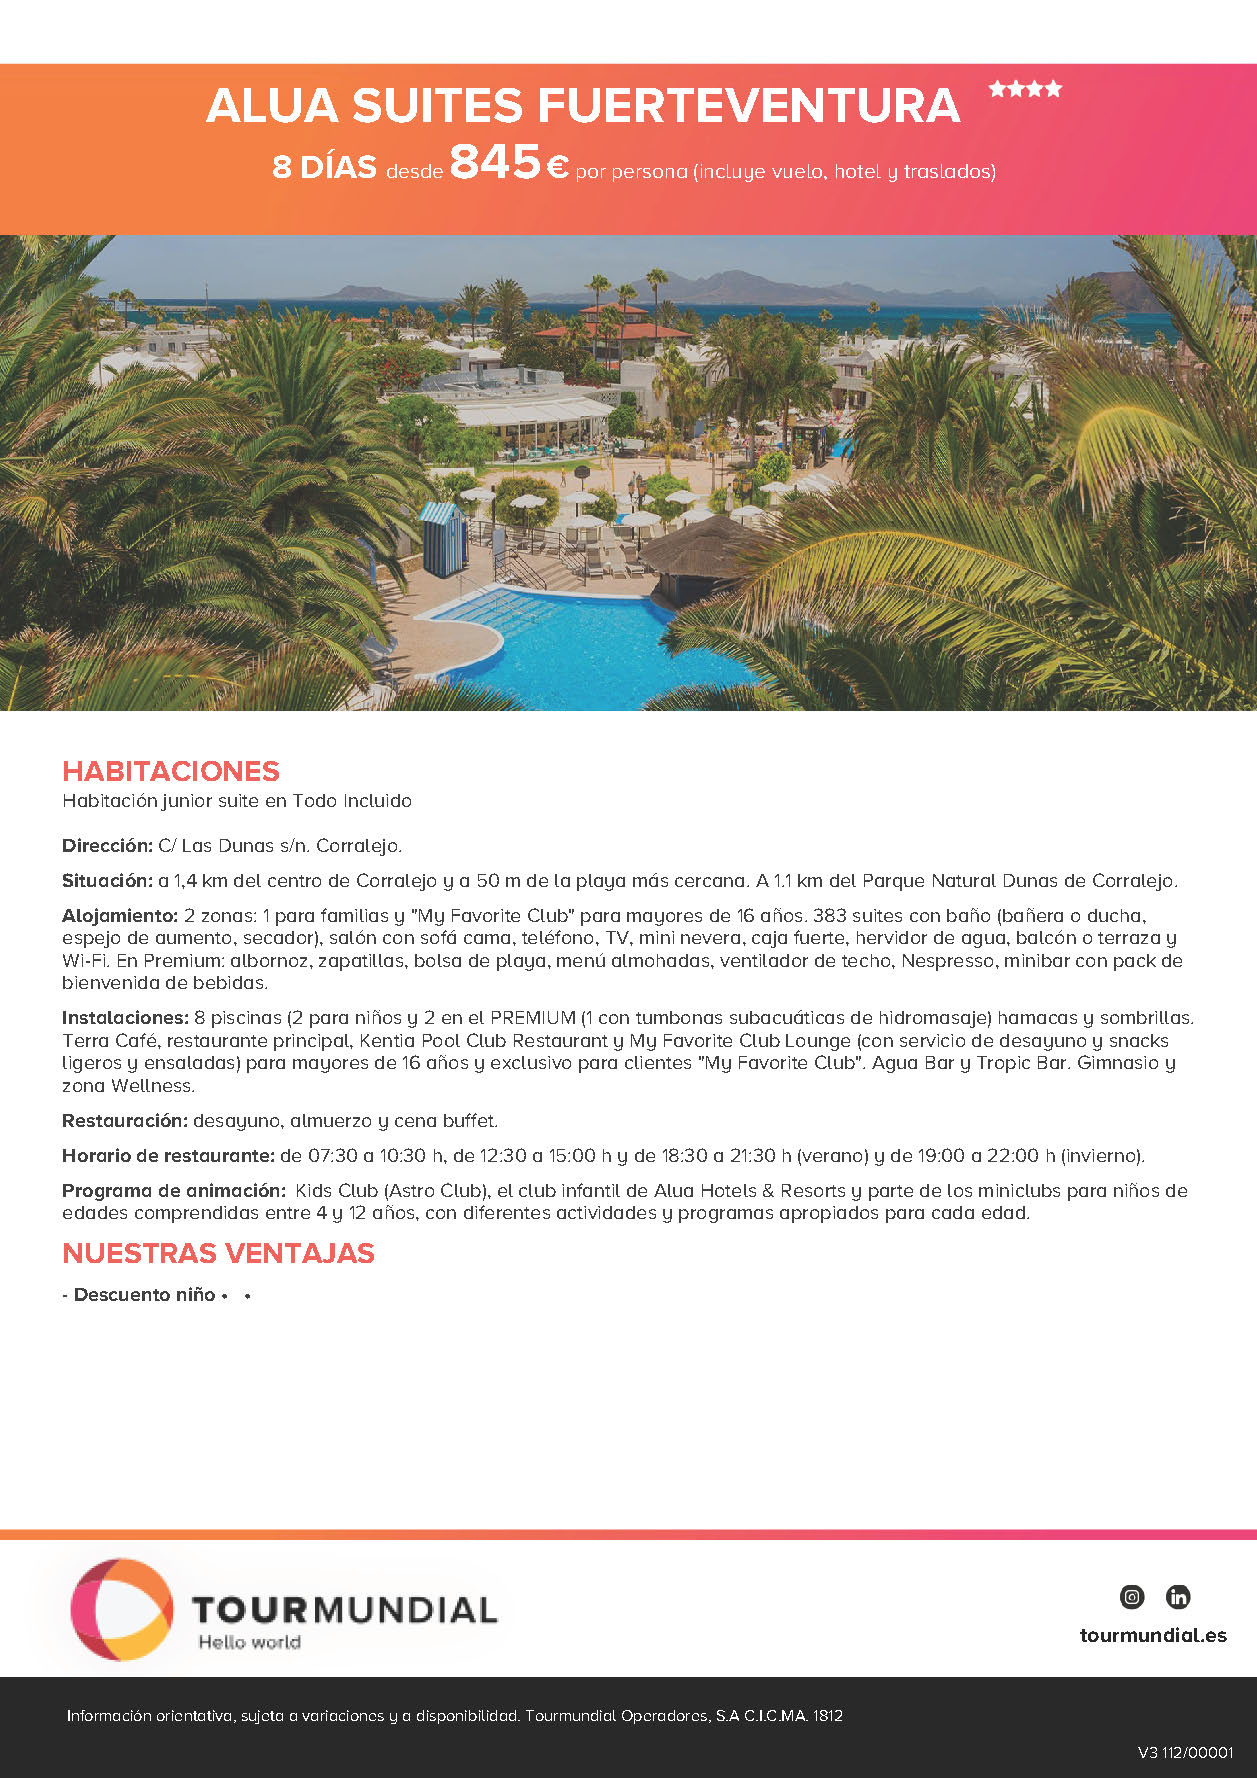 Oferta Tourmundial Vuelo + Hotel + Traslados Alua Suites Fuerteventura Corralejo Fuerteventura Todo Incluido 8 dias